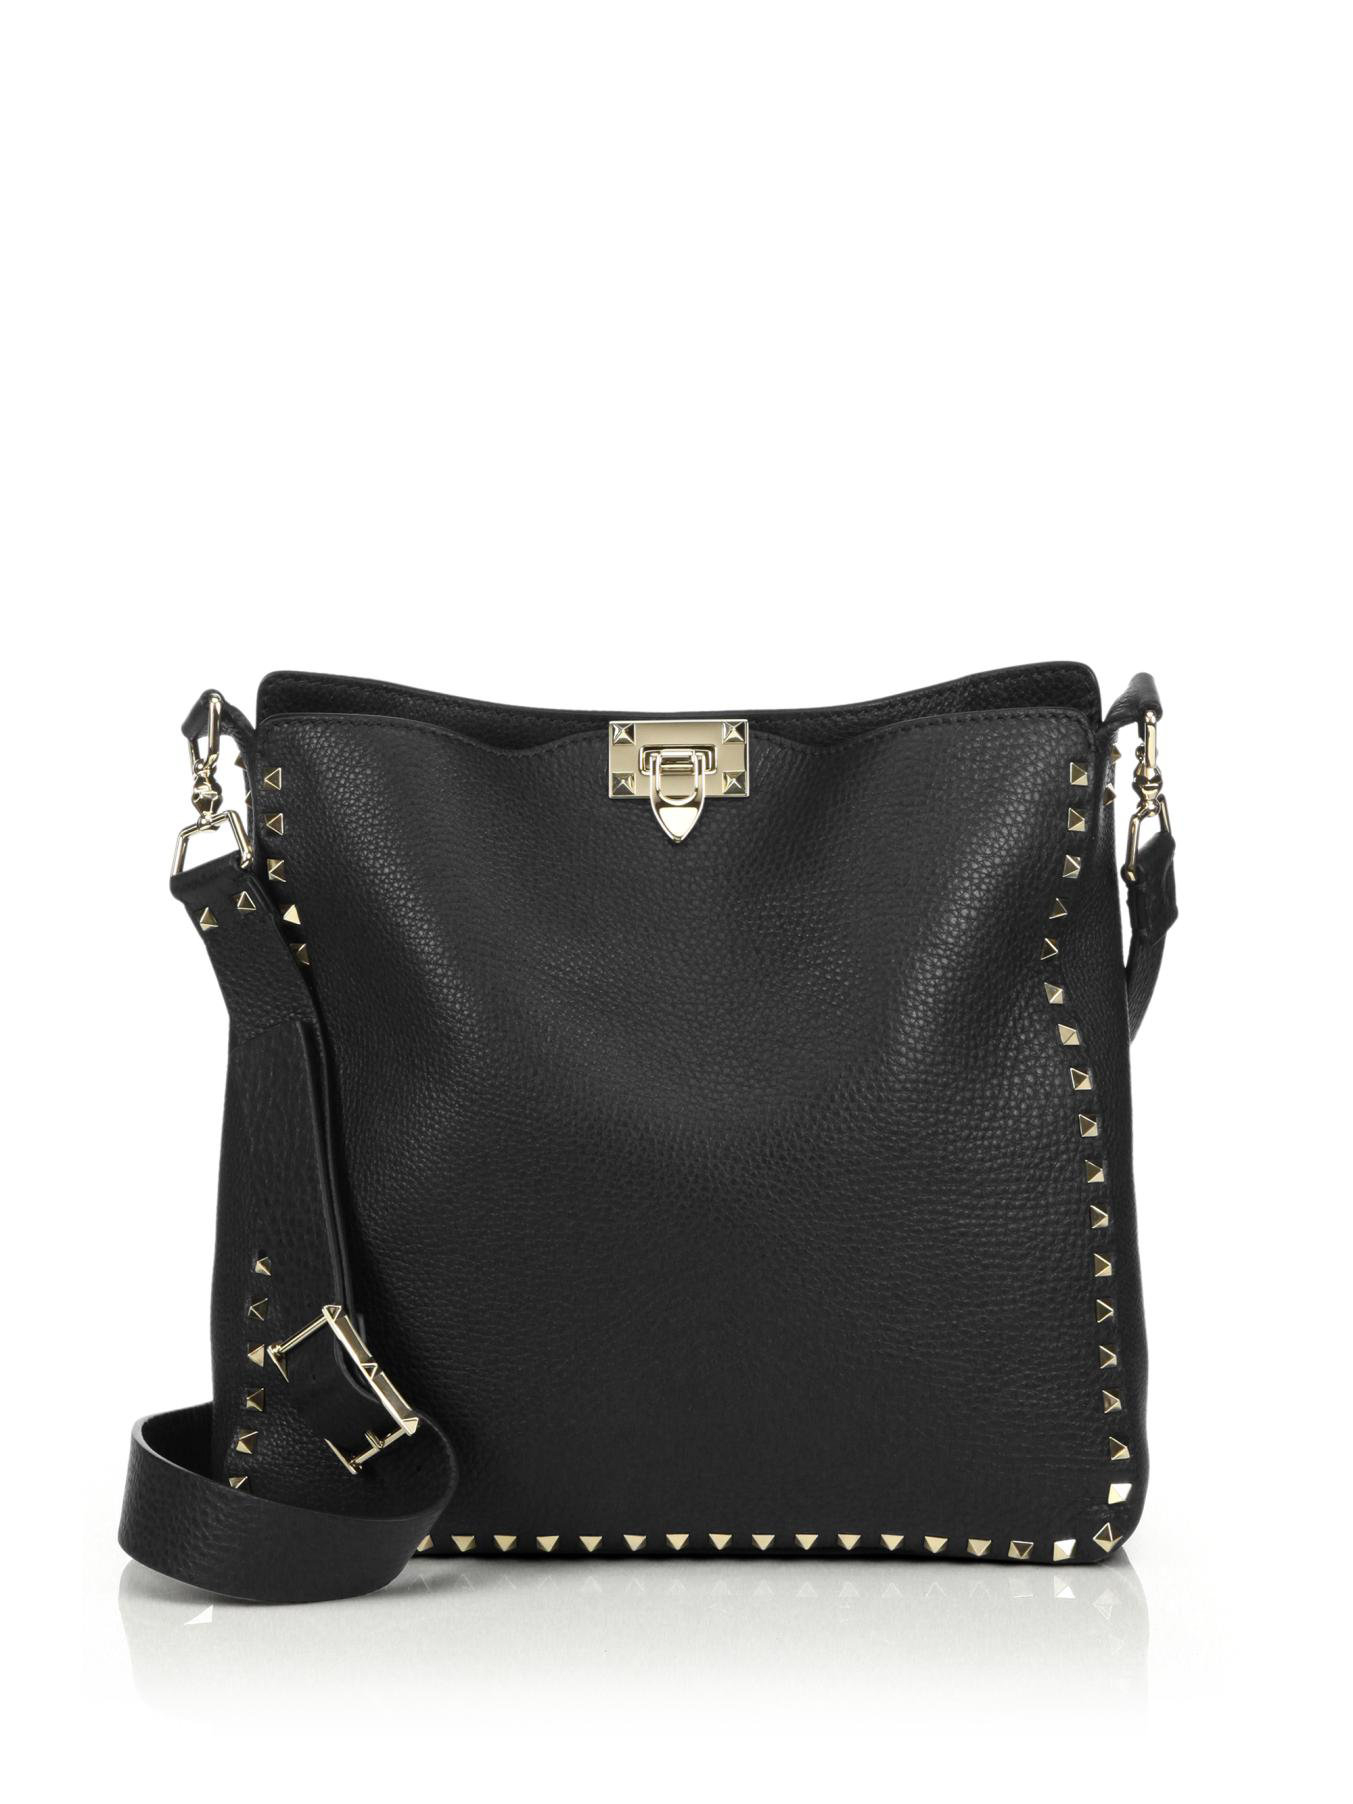 Valentino Rockstud Utilitarian Medium Crossbody Bag in Black | Lyst